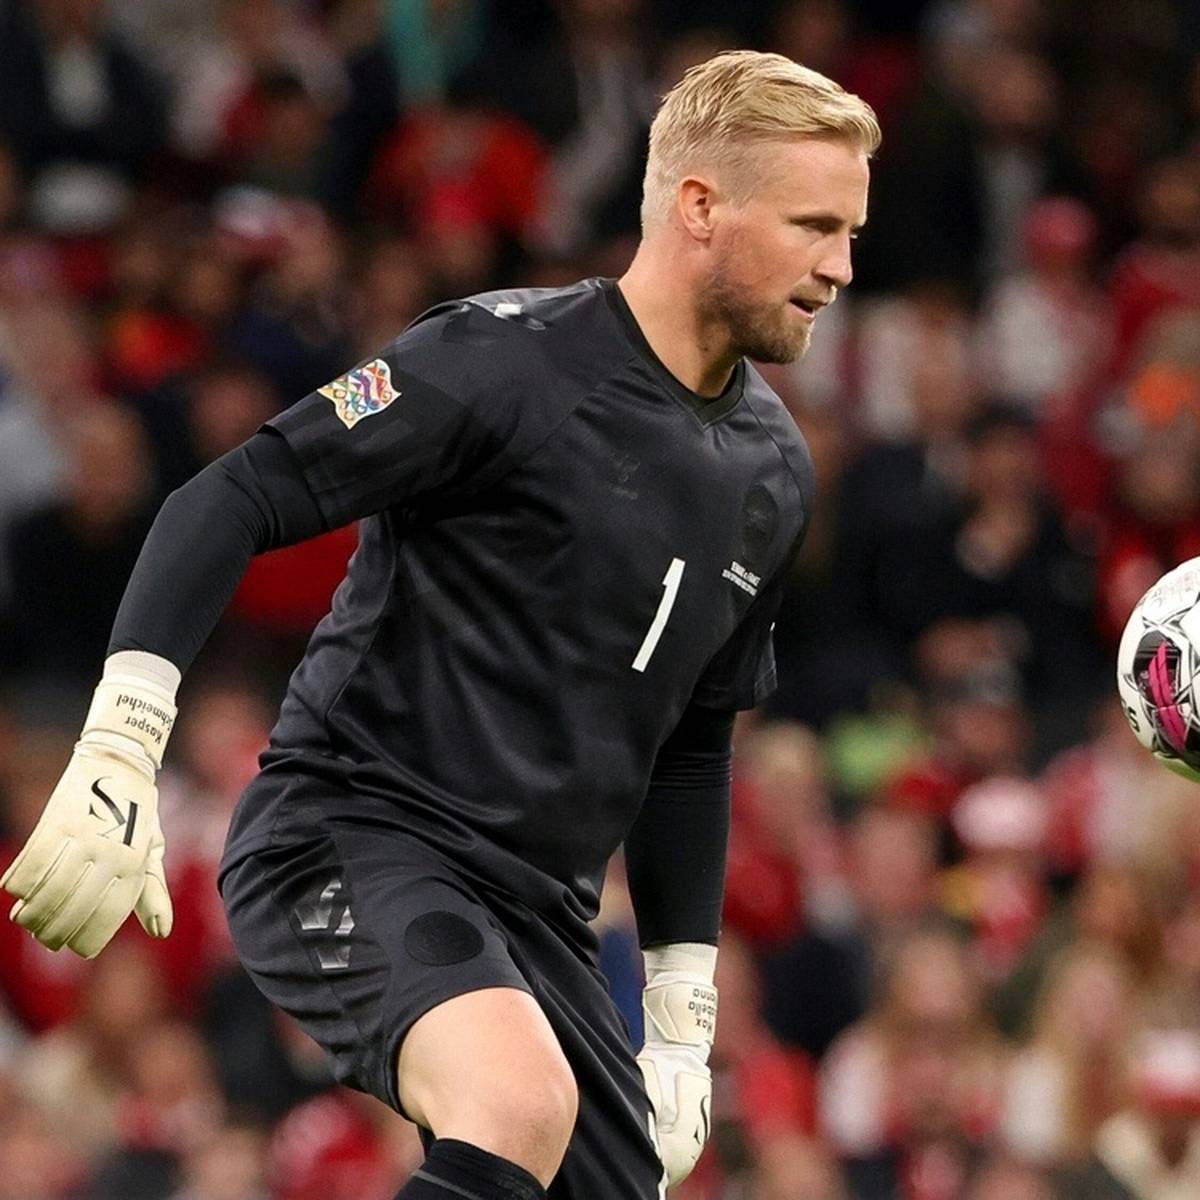 Dänemark hat mit einem besonderen Trikot für die WM für Aussehen gesorgt. Dafür bekommt es nun massive Kritik von der Organisatoren.